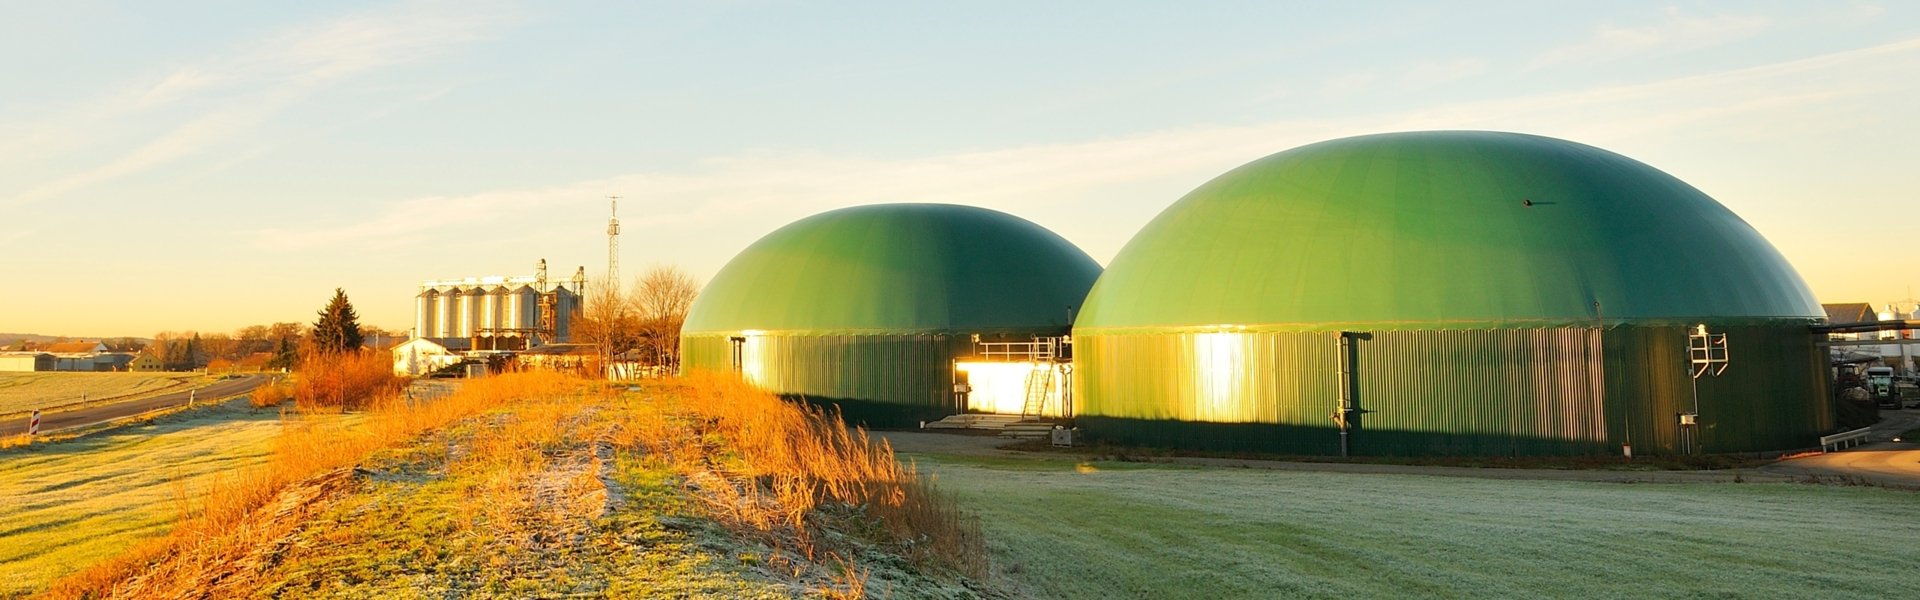 Außenaufnahme einer Biogasanlage